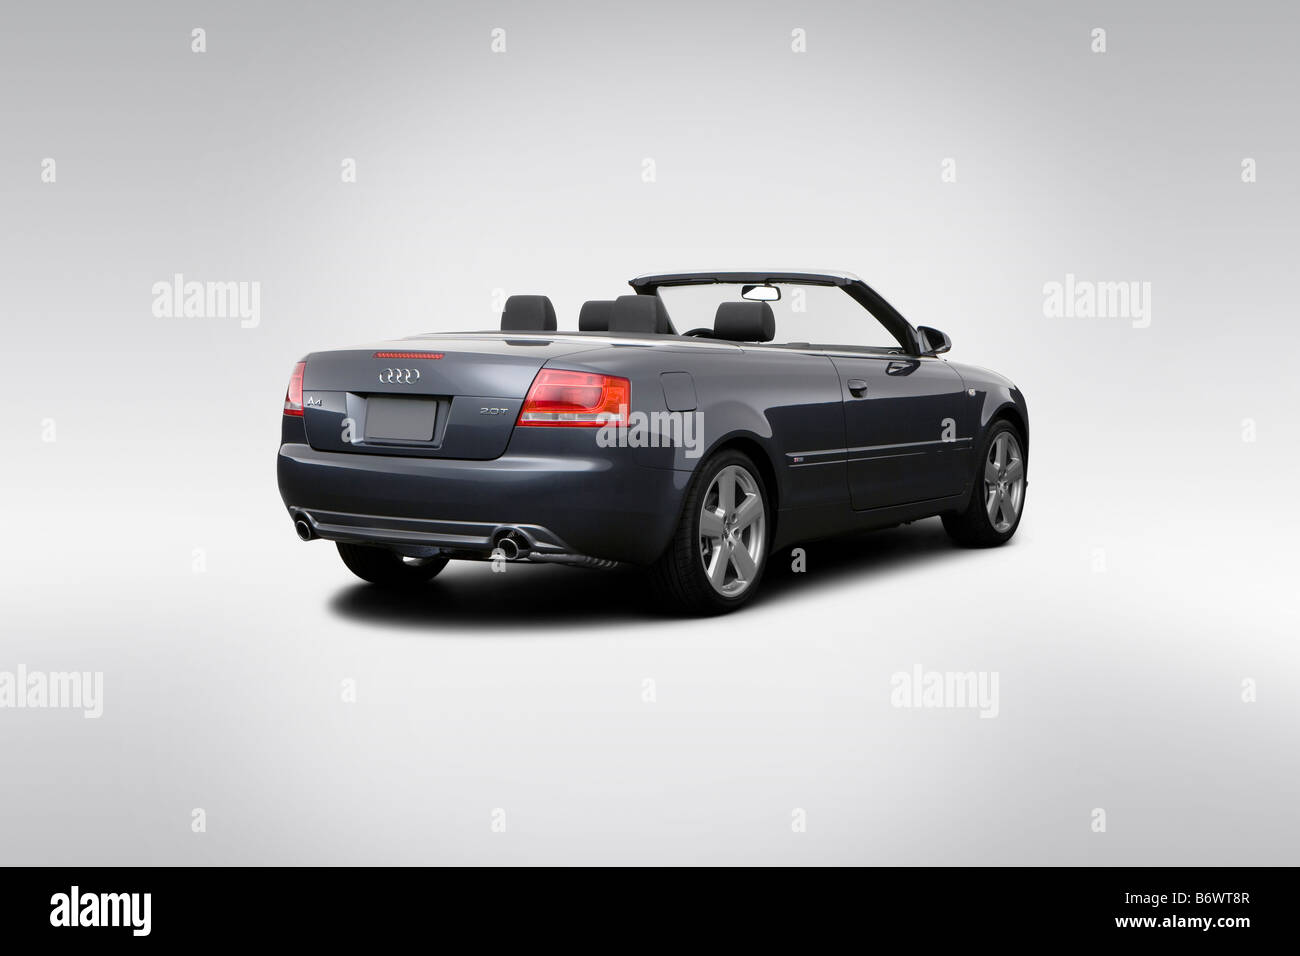 Audi a4 cabriolet immagini e fotografie stock ad alta risoluzione - Alamy